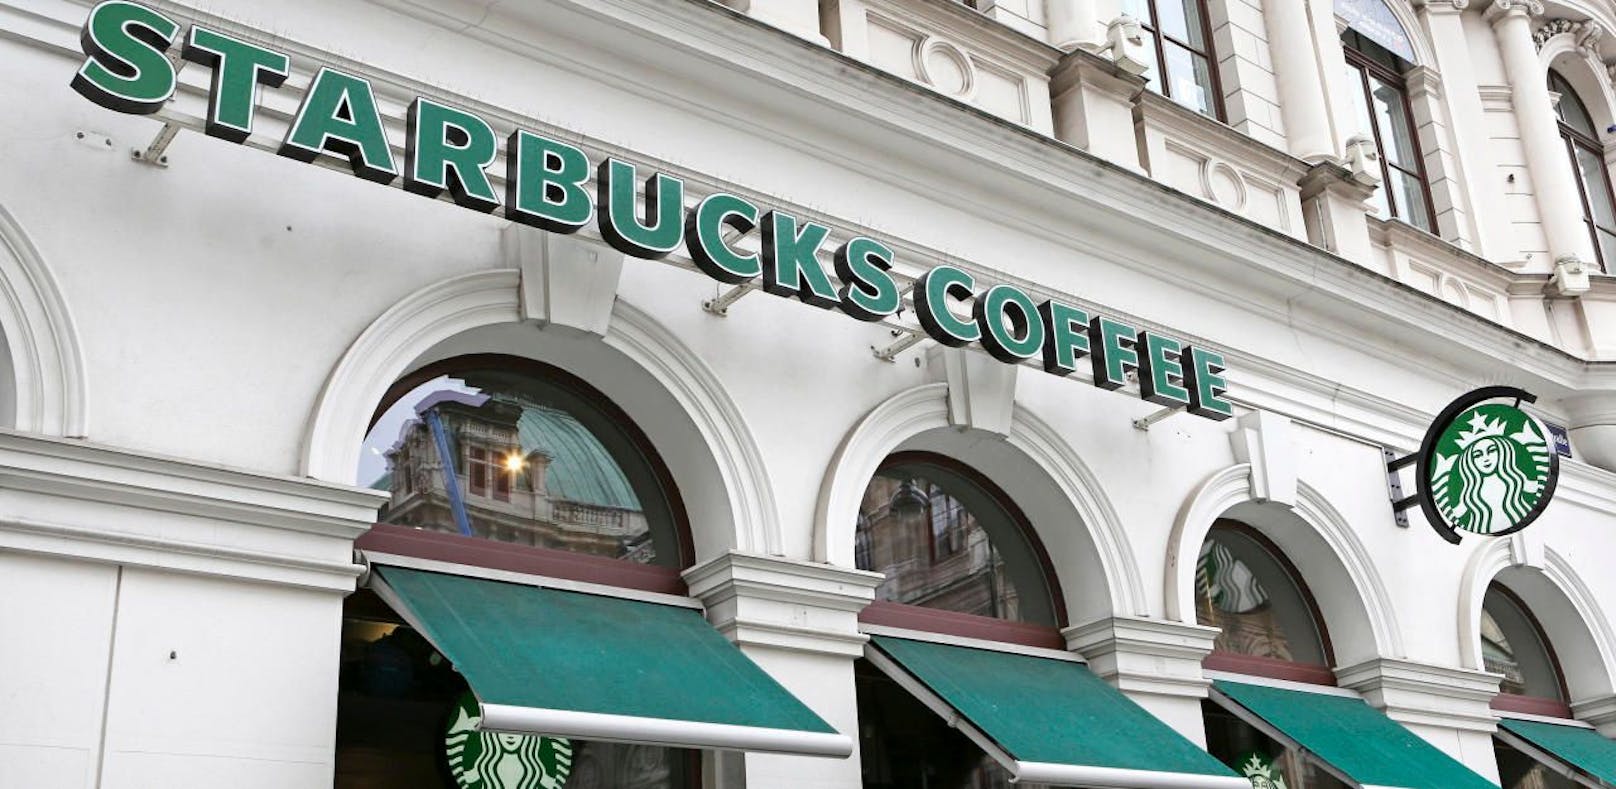 Messerstecherei im Starbucks – ein Verletzter